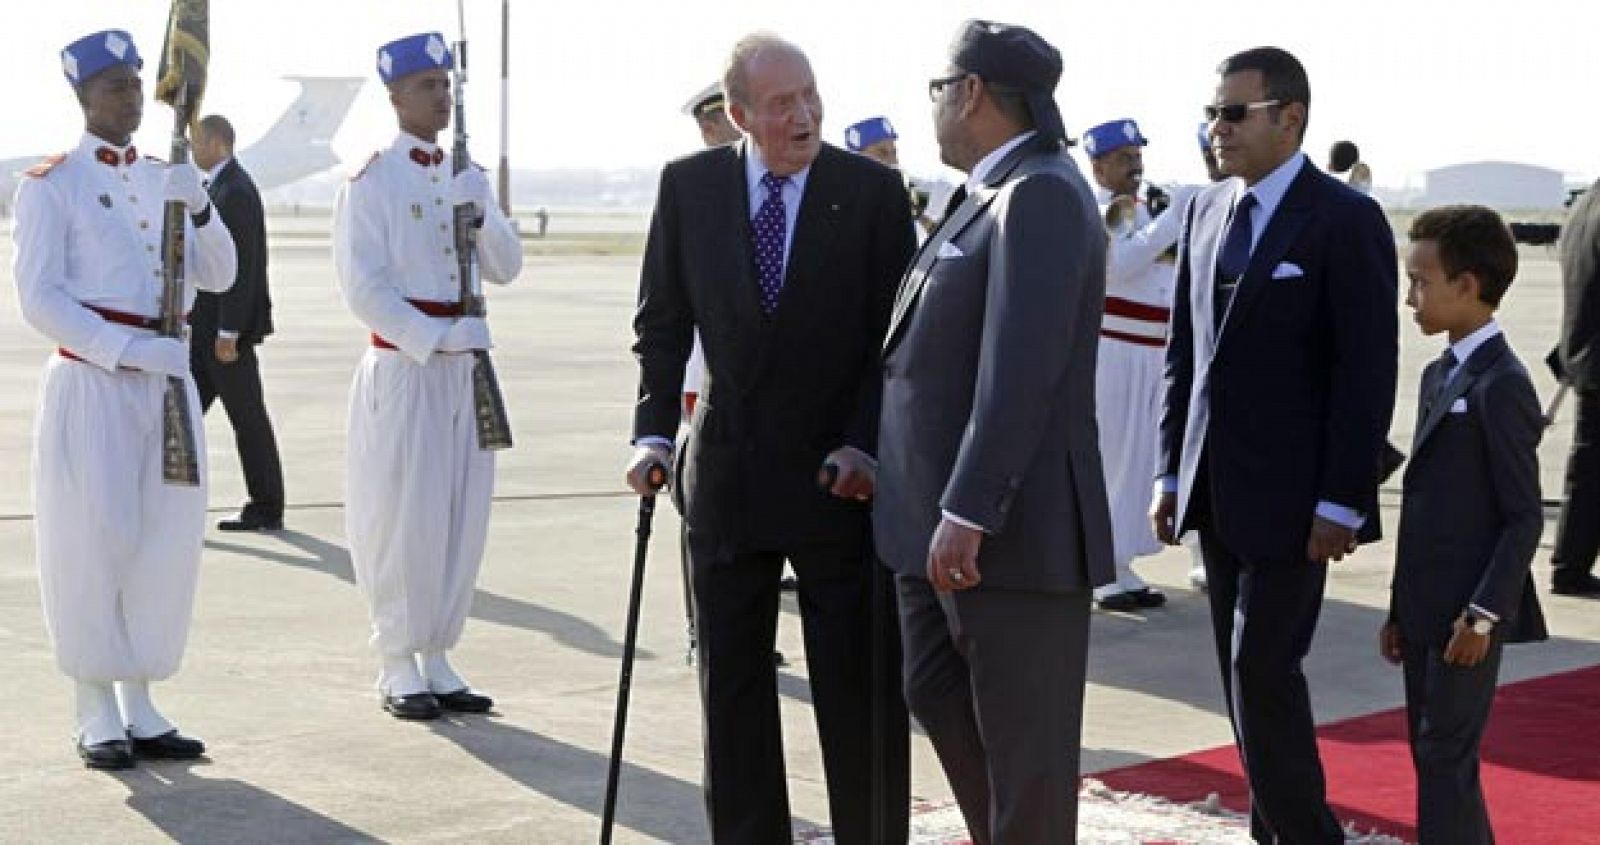 El Rey Juan Carlos es recibido por el monarca Mohamed VI, a su llegada al aeropuerto Internacional de Rabat en el inicio de su visita oficial.